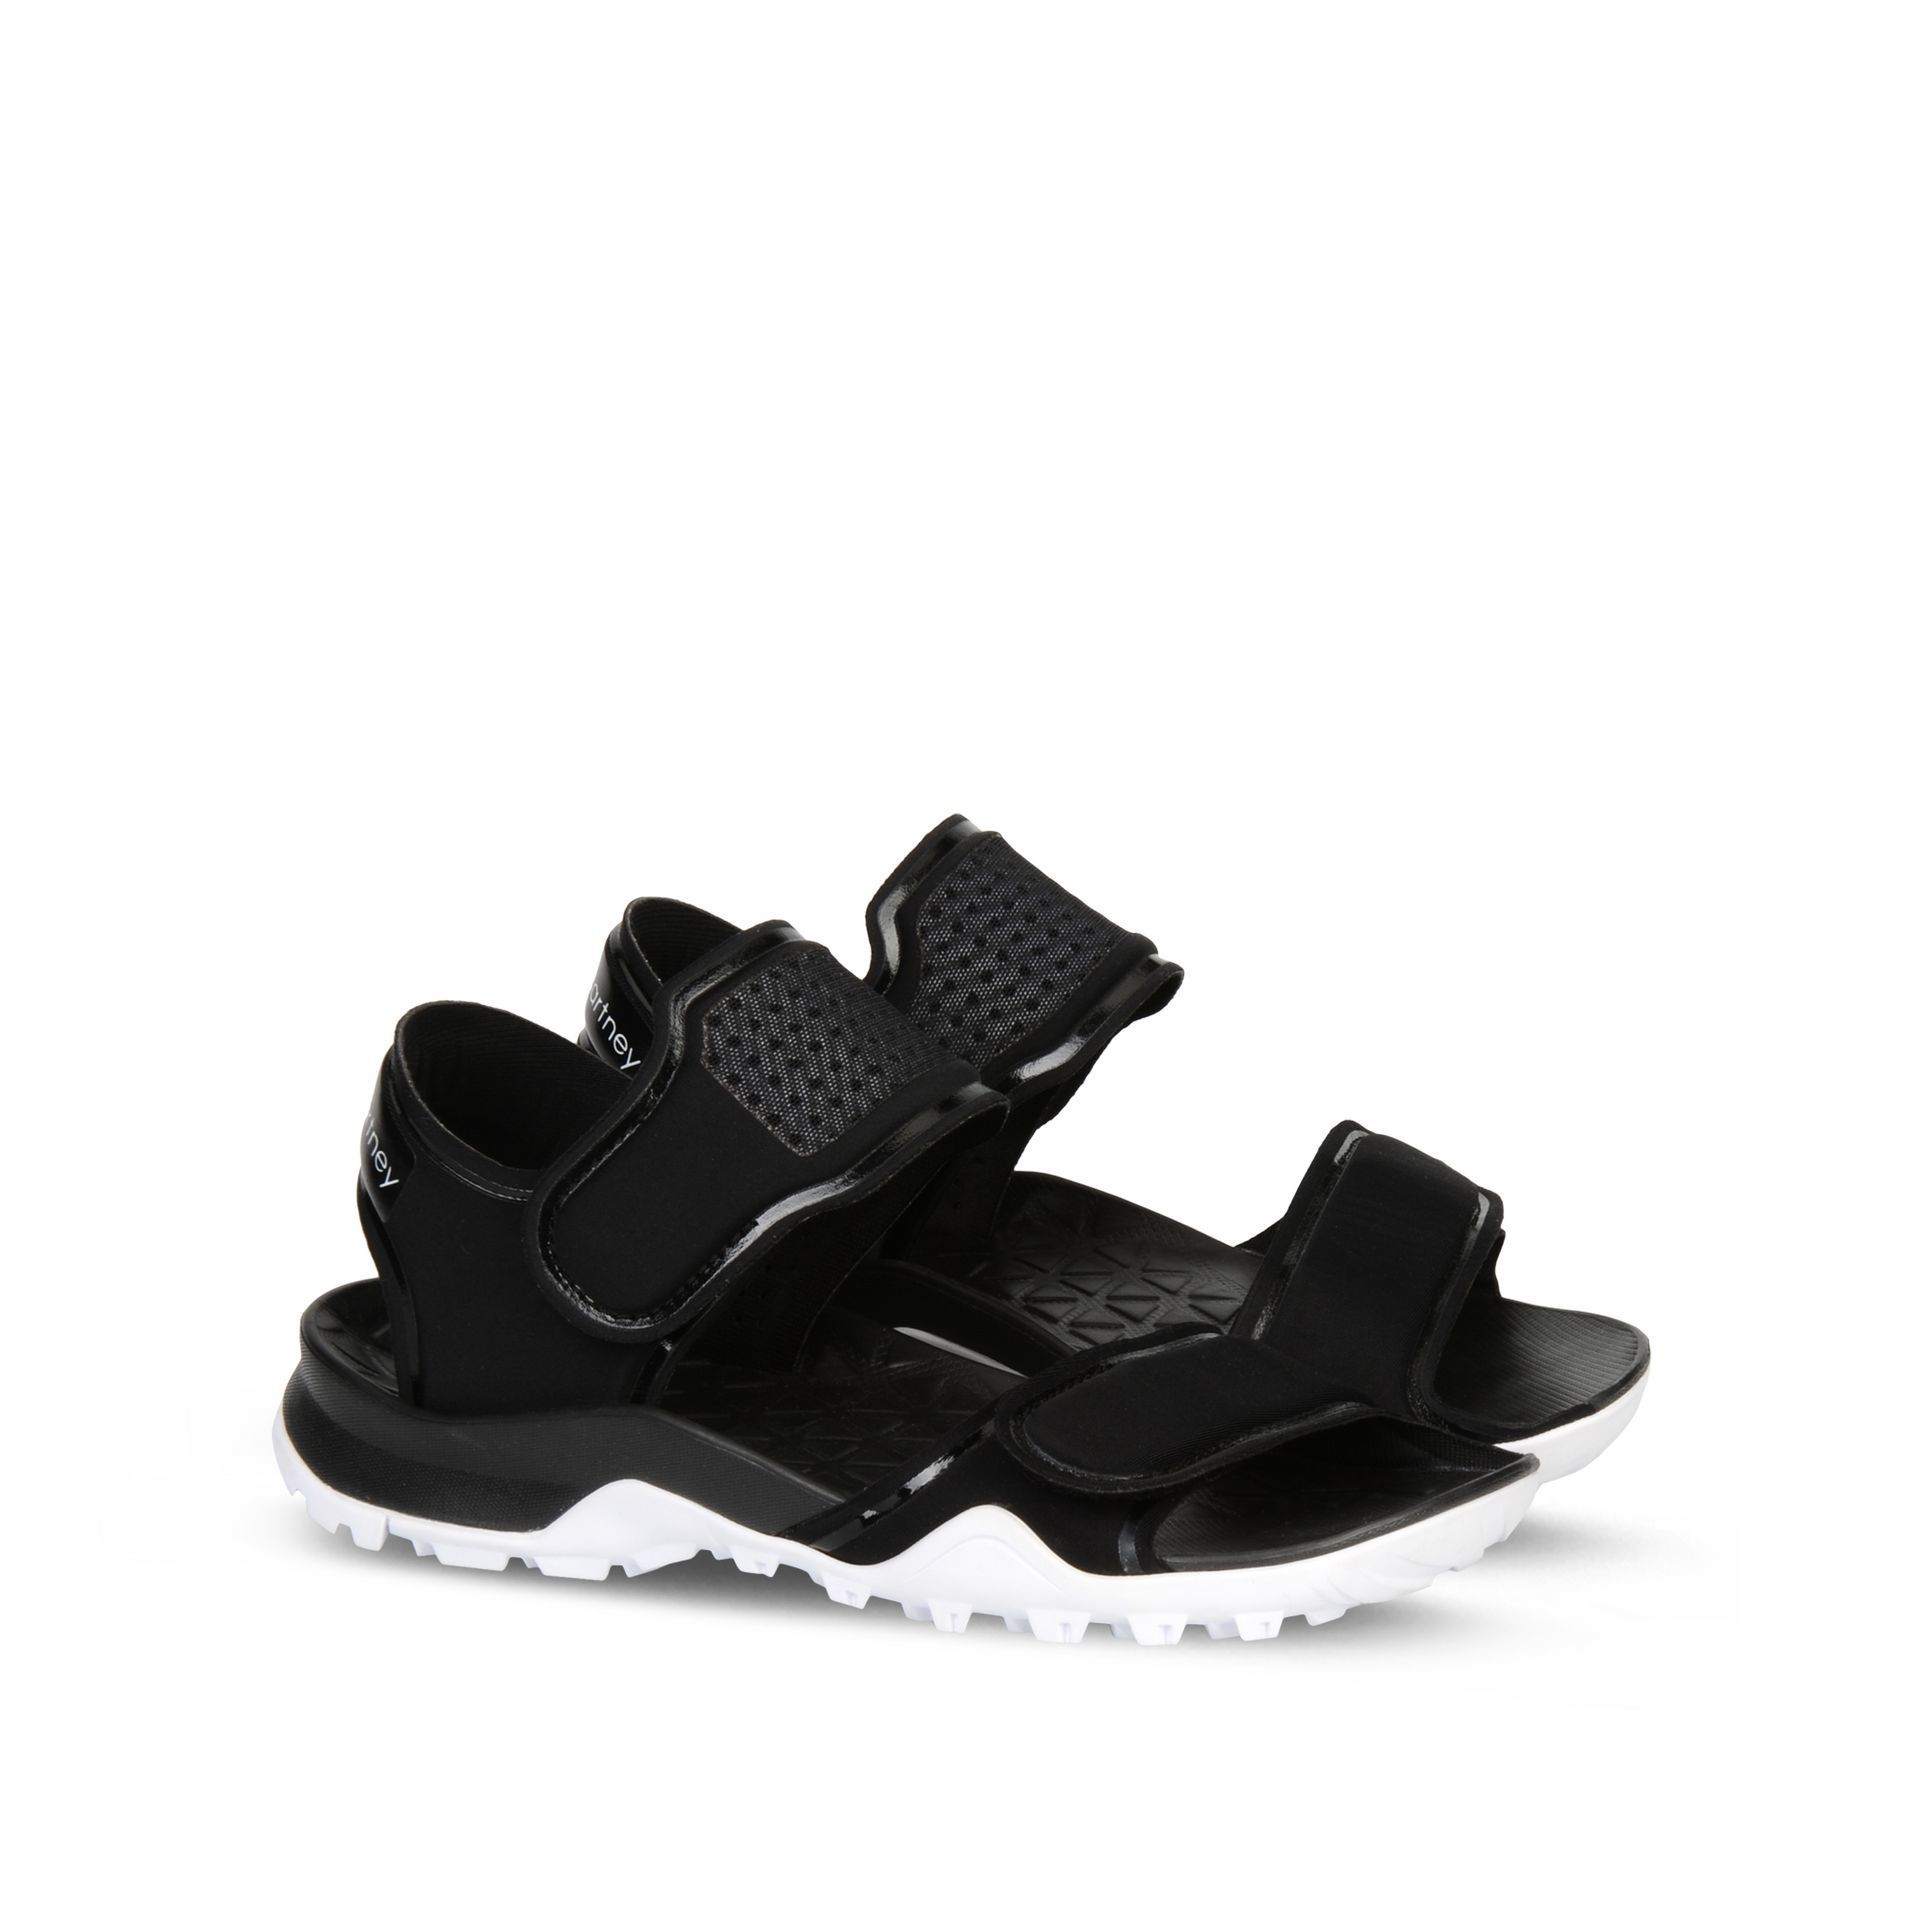 Lyst - adidas By Stella McCartney Black Sandals in Black